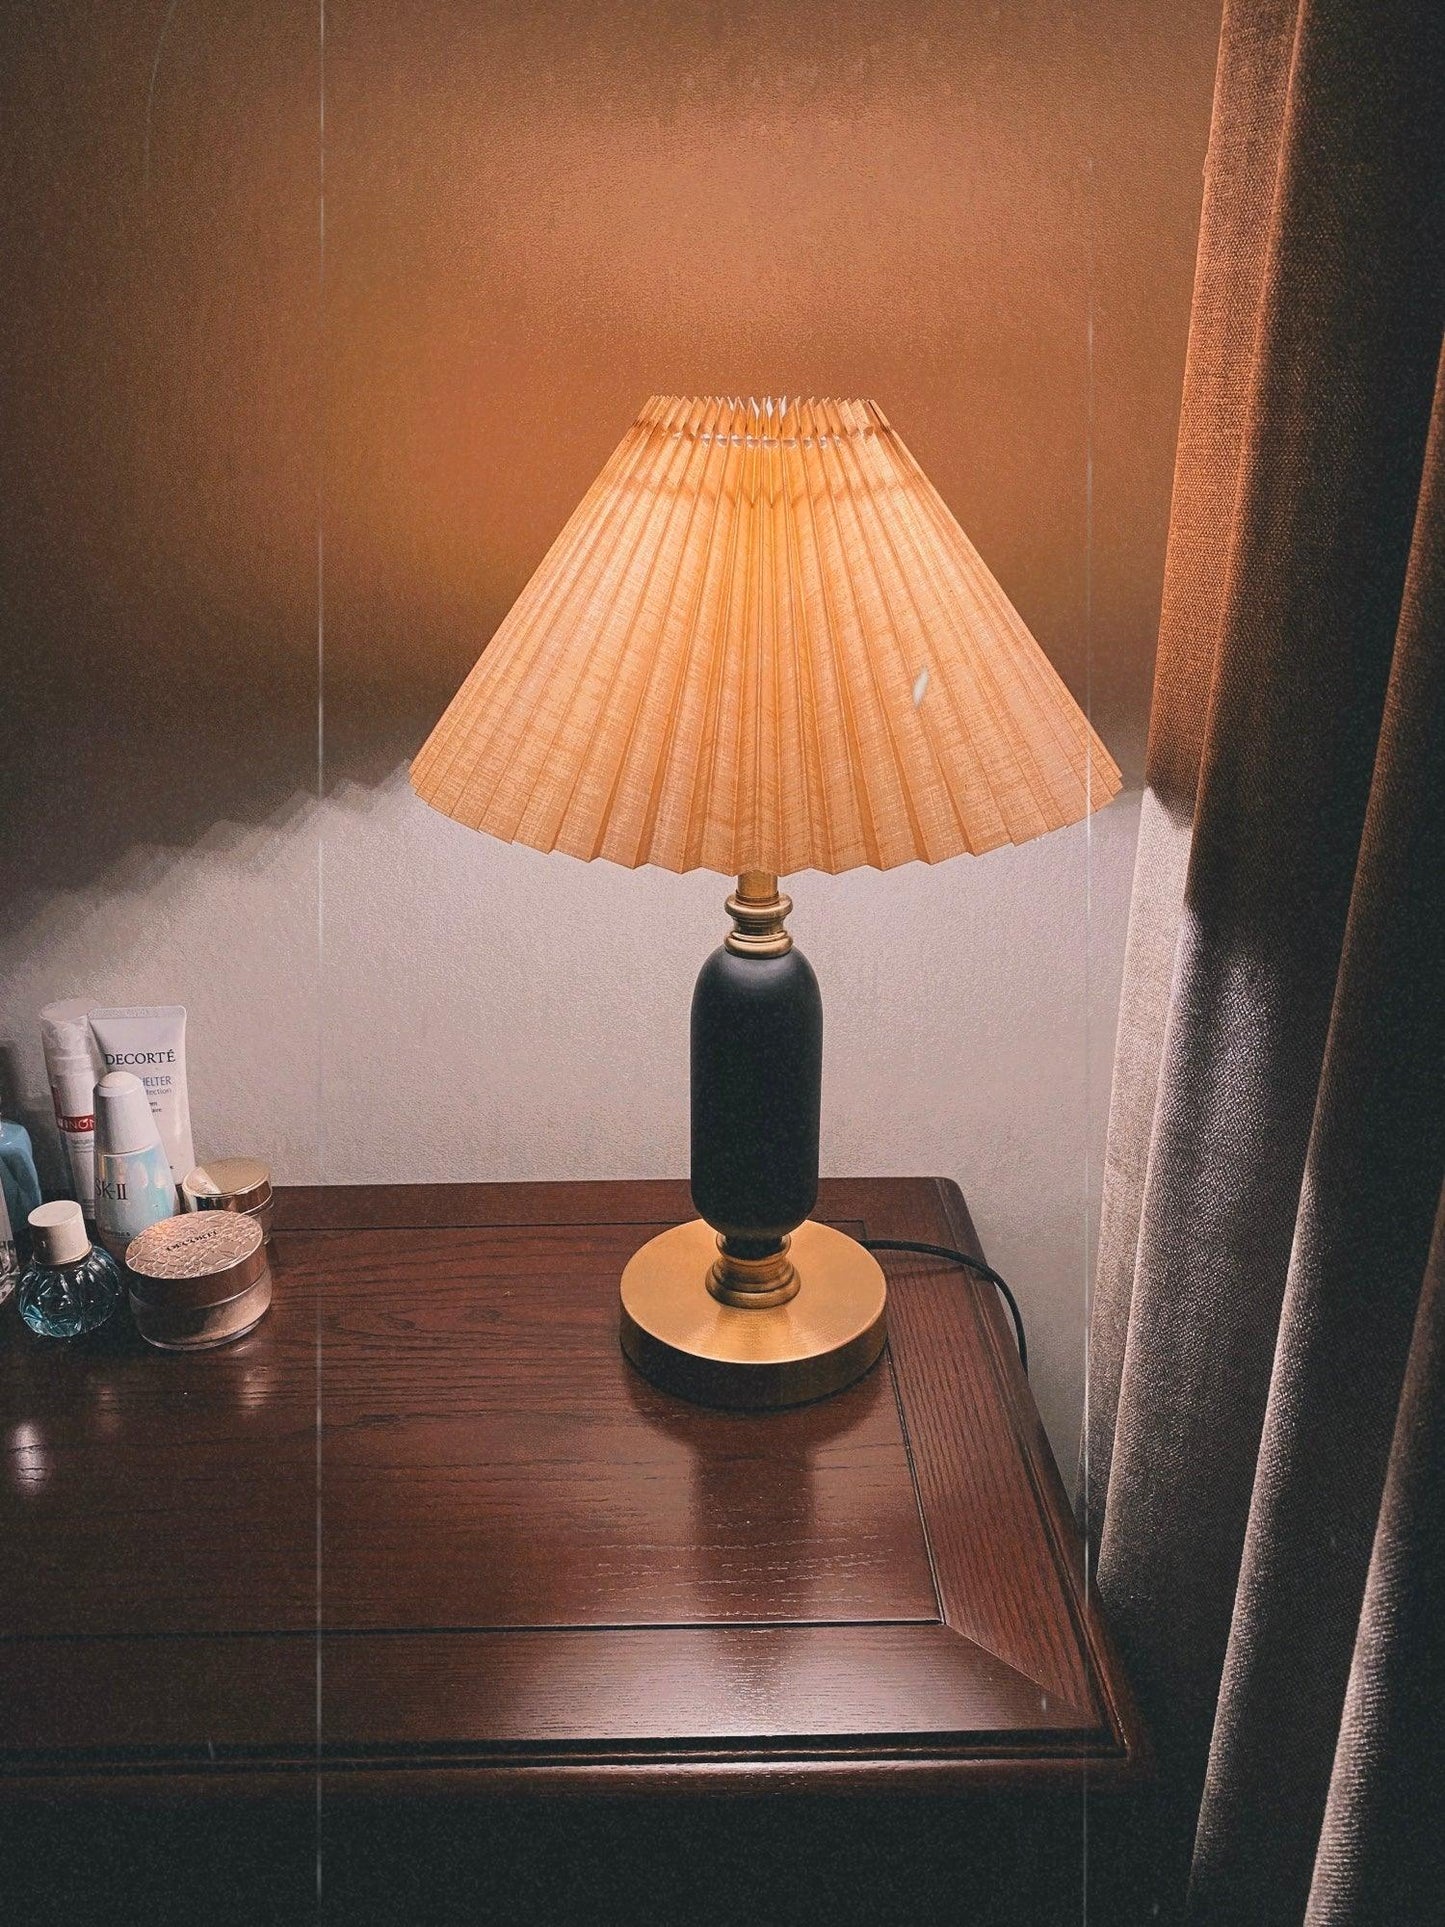 Classic Antique Table Lamp